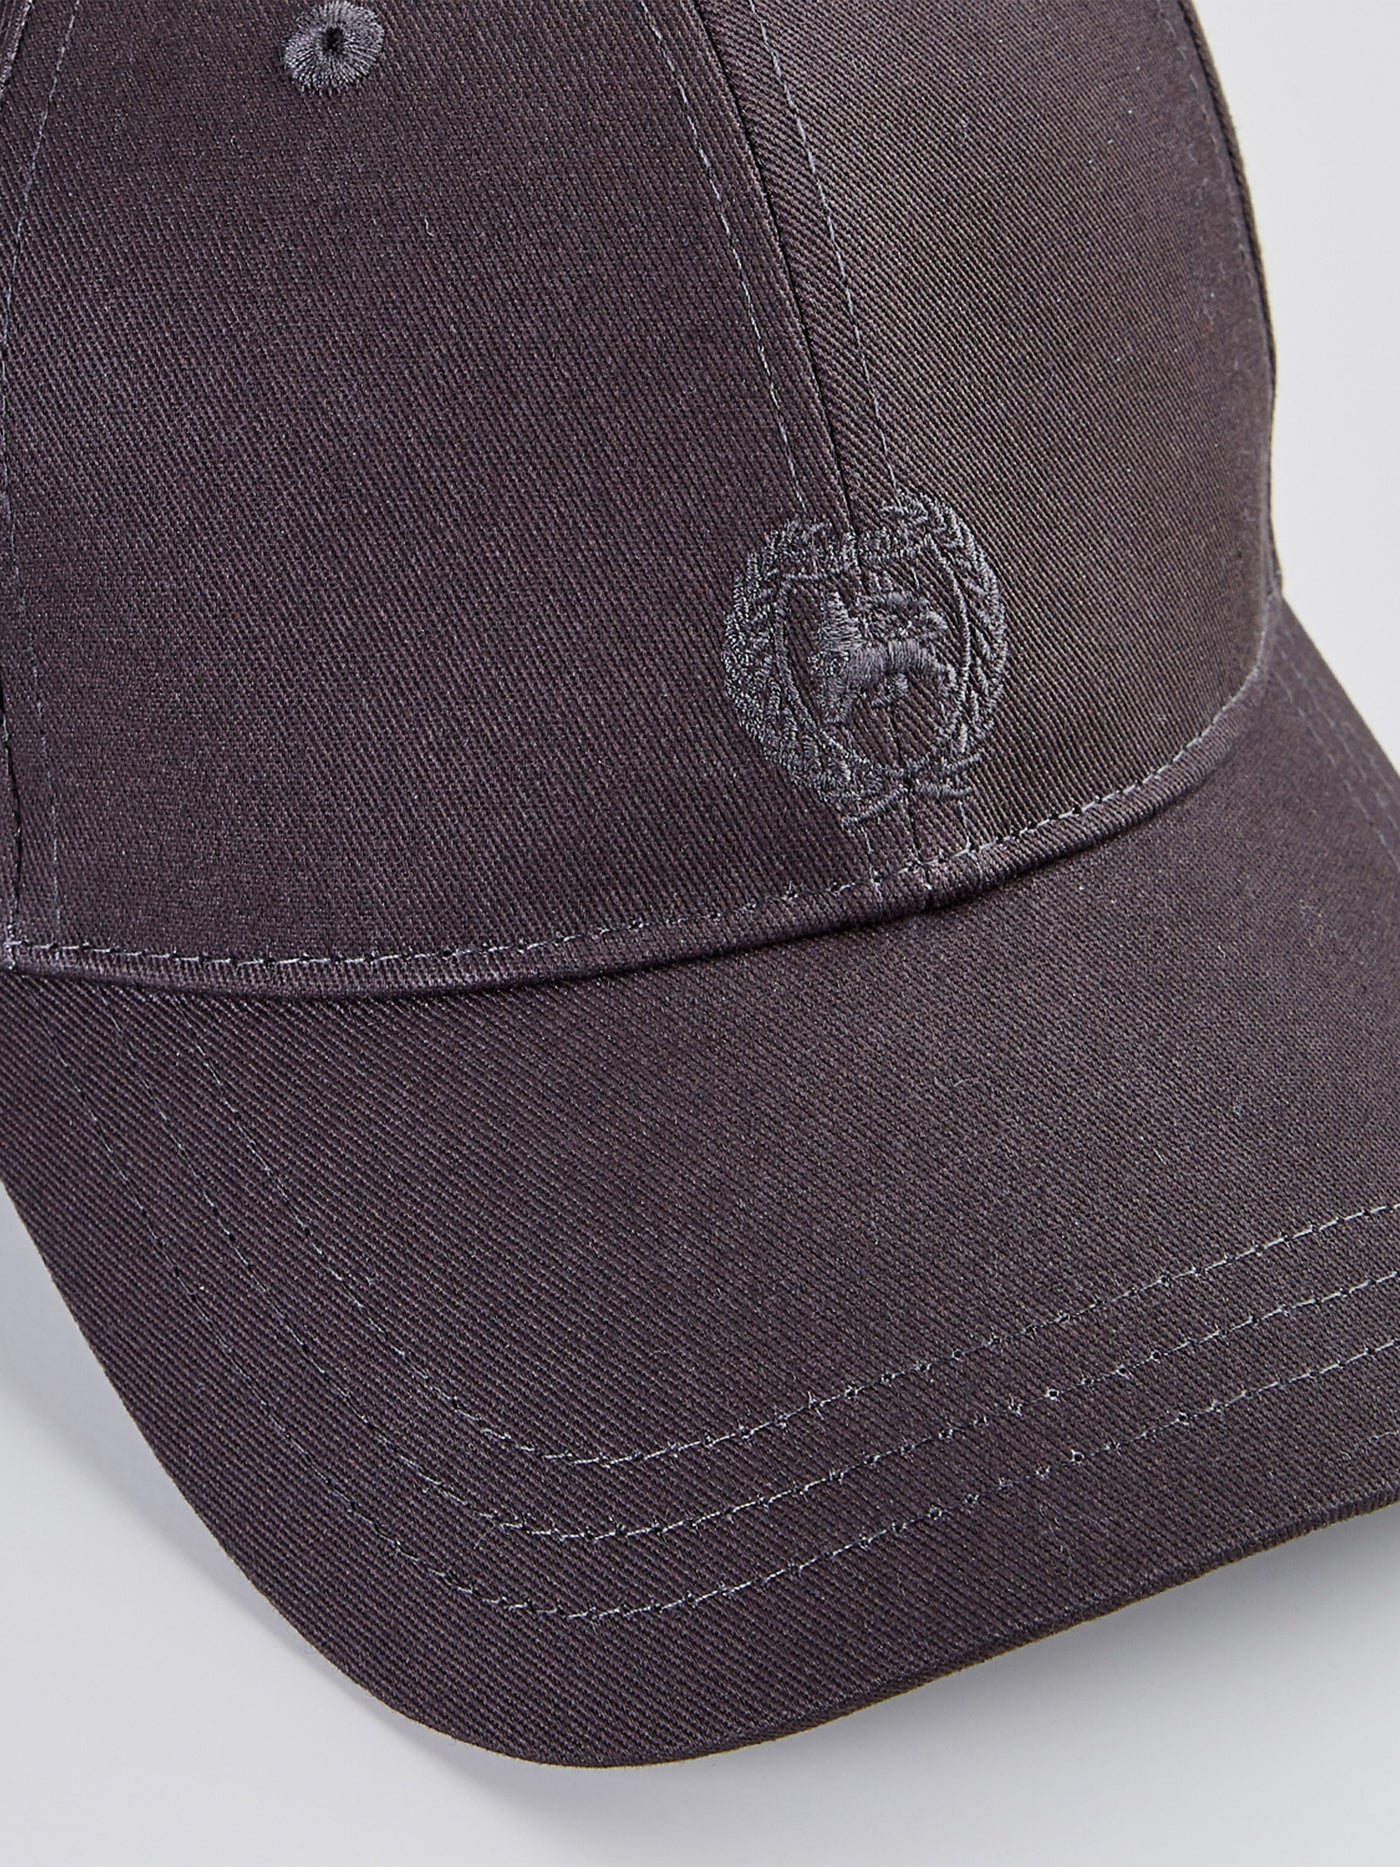 Baseball cap LERROS with SHOP logo –